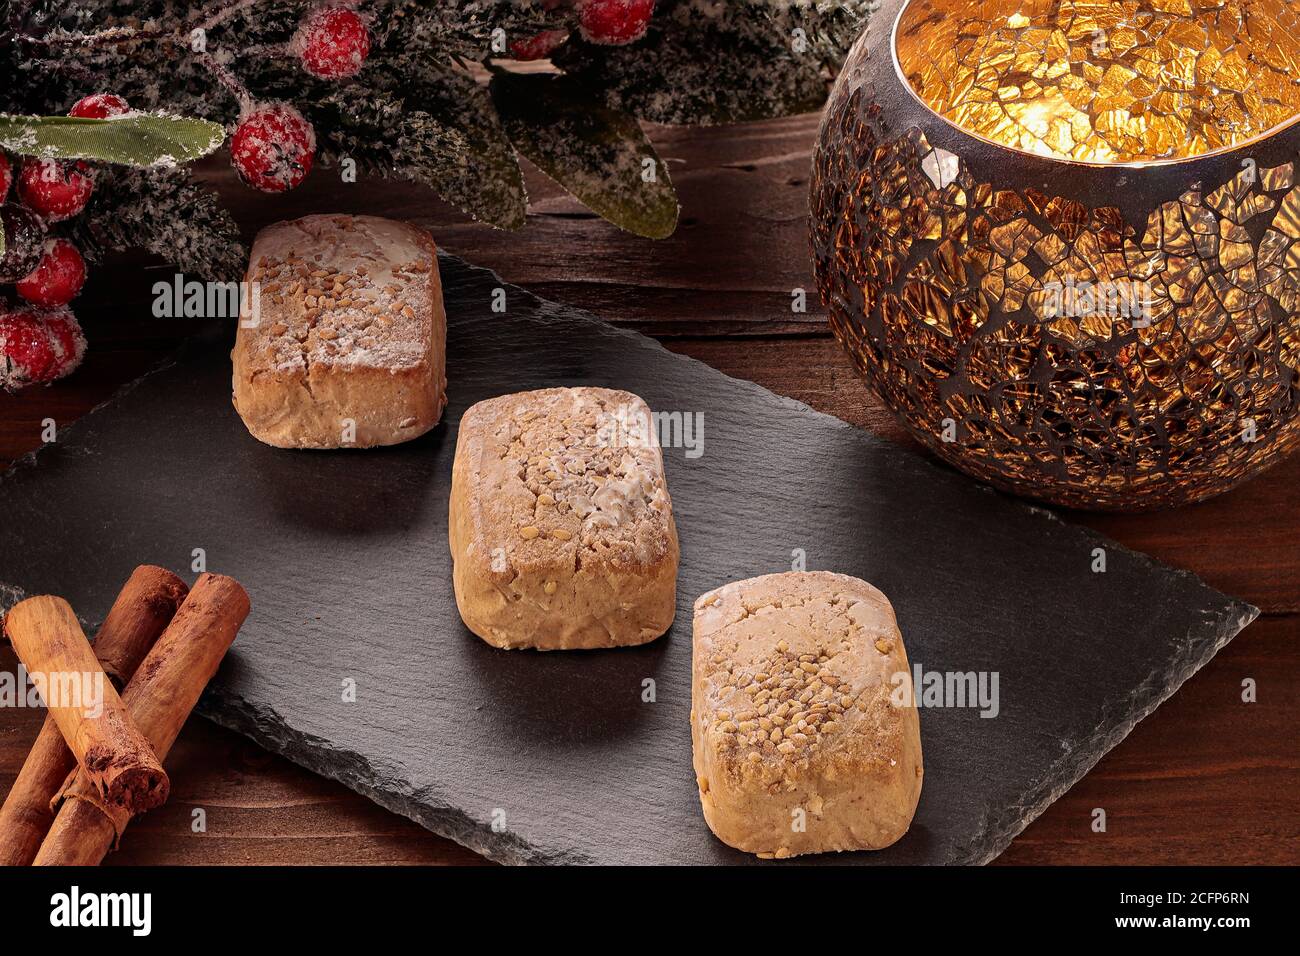 Polvorone auf Schieferteller mit Zimt und Kerzenhalter auf Holztisch. Polvoron ist ein typisches Produkt von Weihnachtsgebäck in Spanien Stockfoto